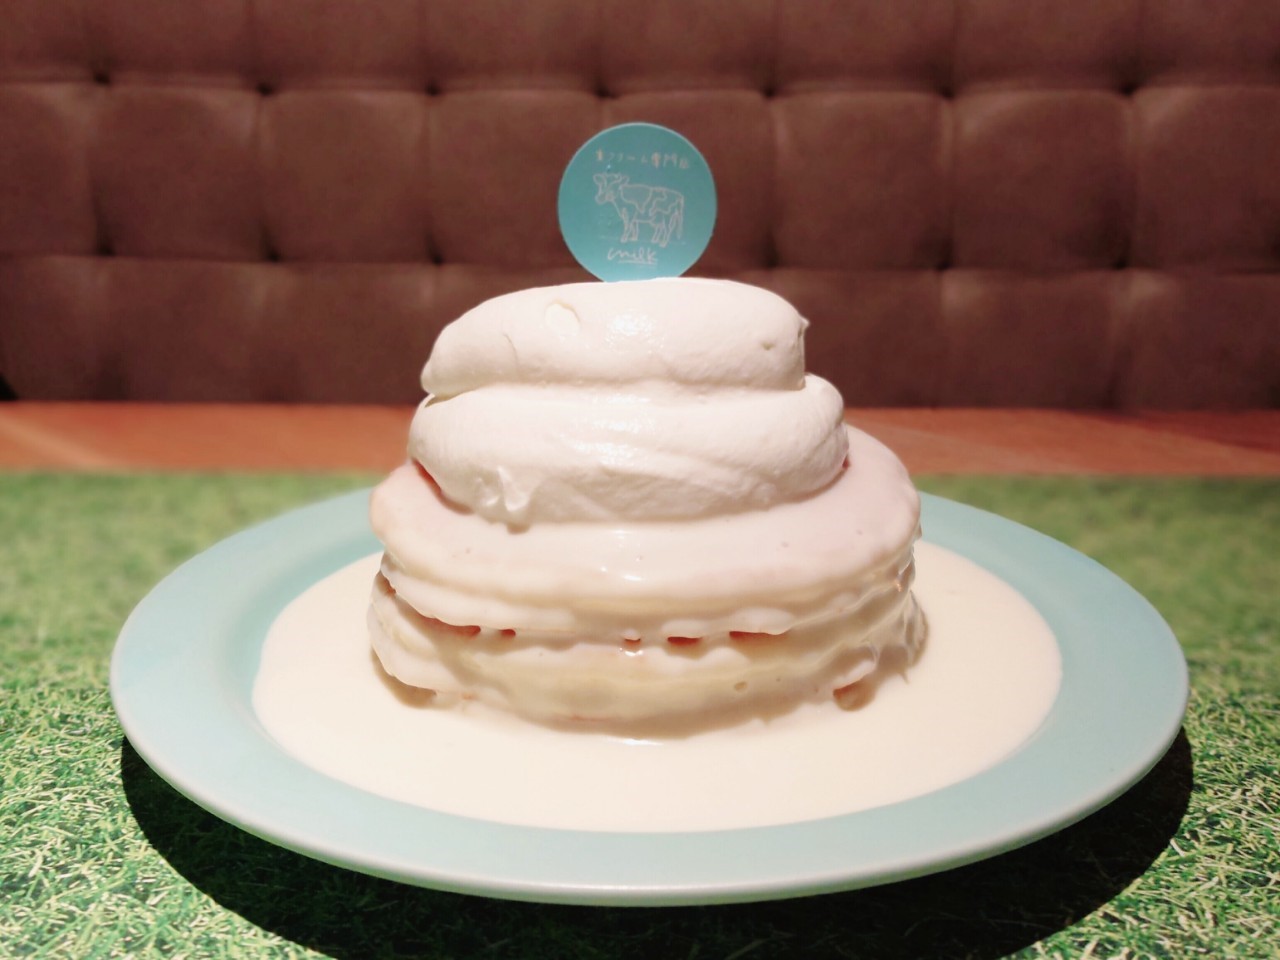 究極 のパンケーキが堪能できる 生クリーム専門店 ミルク が天王寺にオープンした 4 1 大阪ミナミじゃーなる